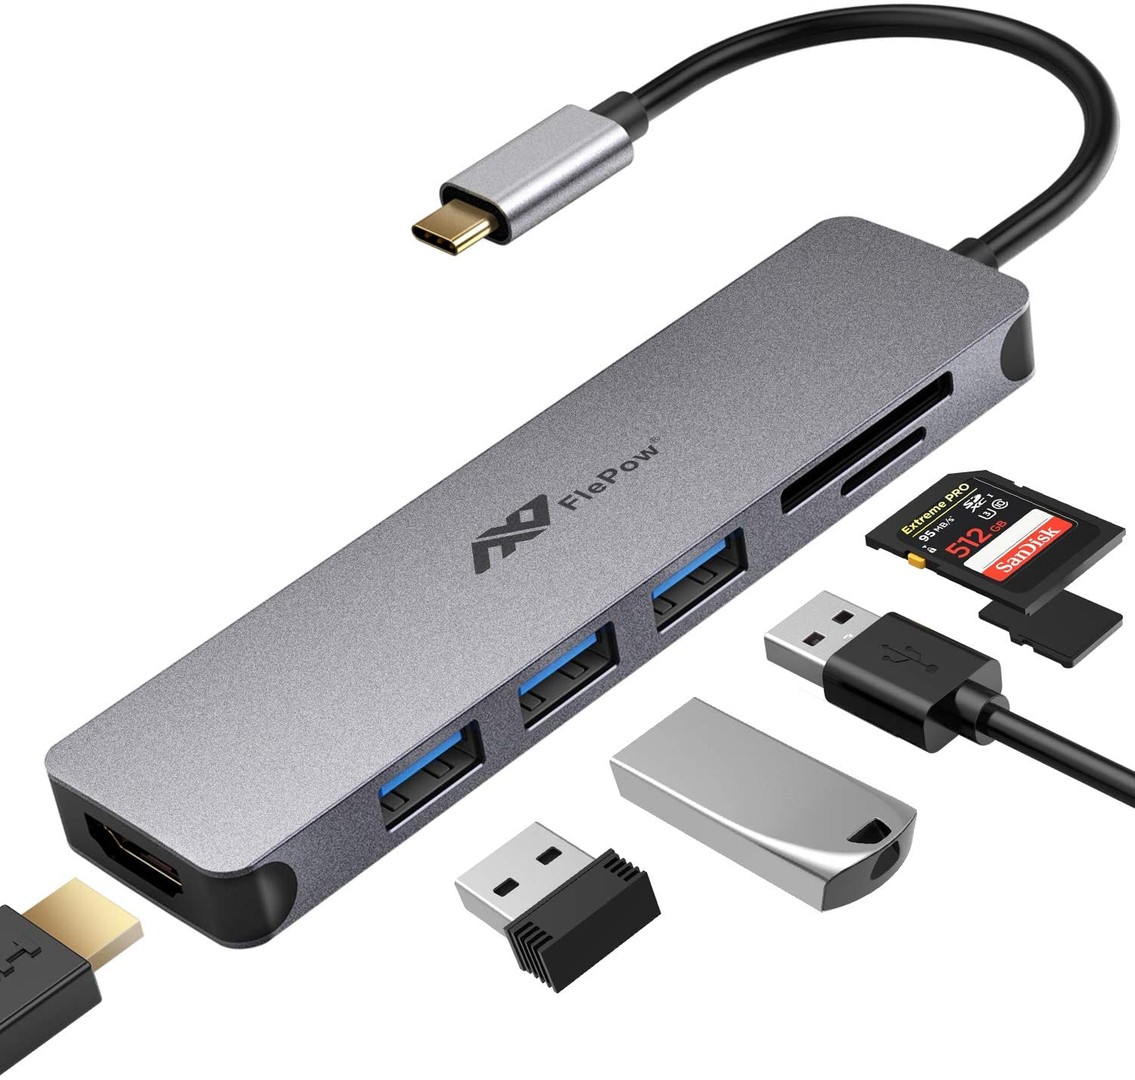 otros electronicos - ADAPTADOR MULTIPUERTO USB C 7 EN 1 A HDMI 4K, USB 3.0, LECTOR DE TARJETAS SD